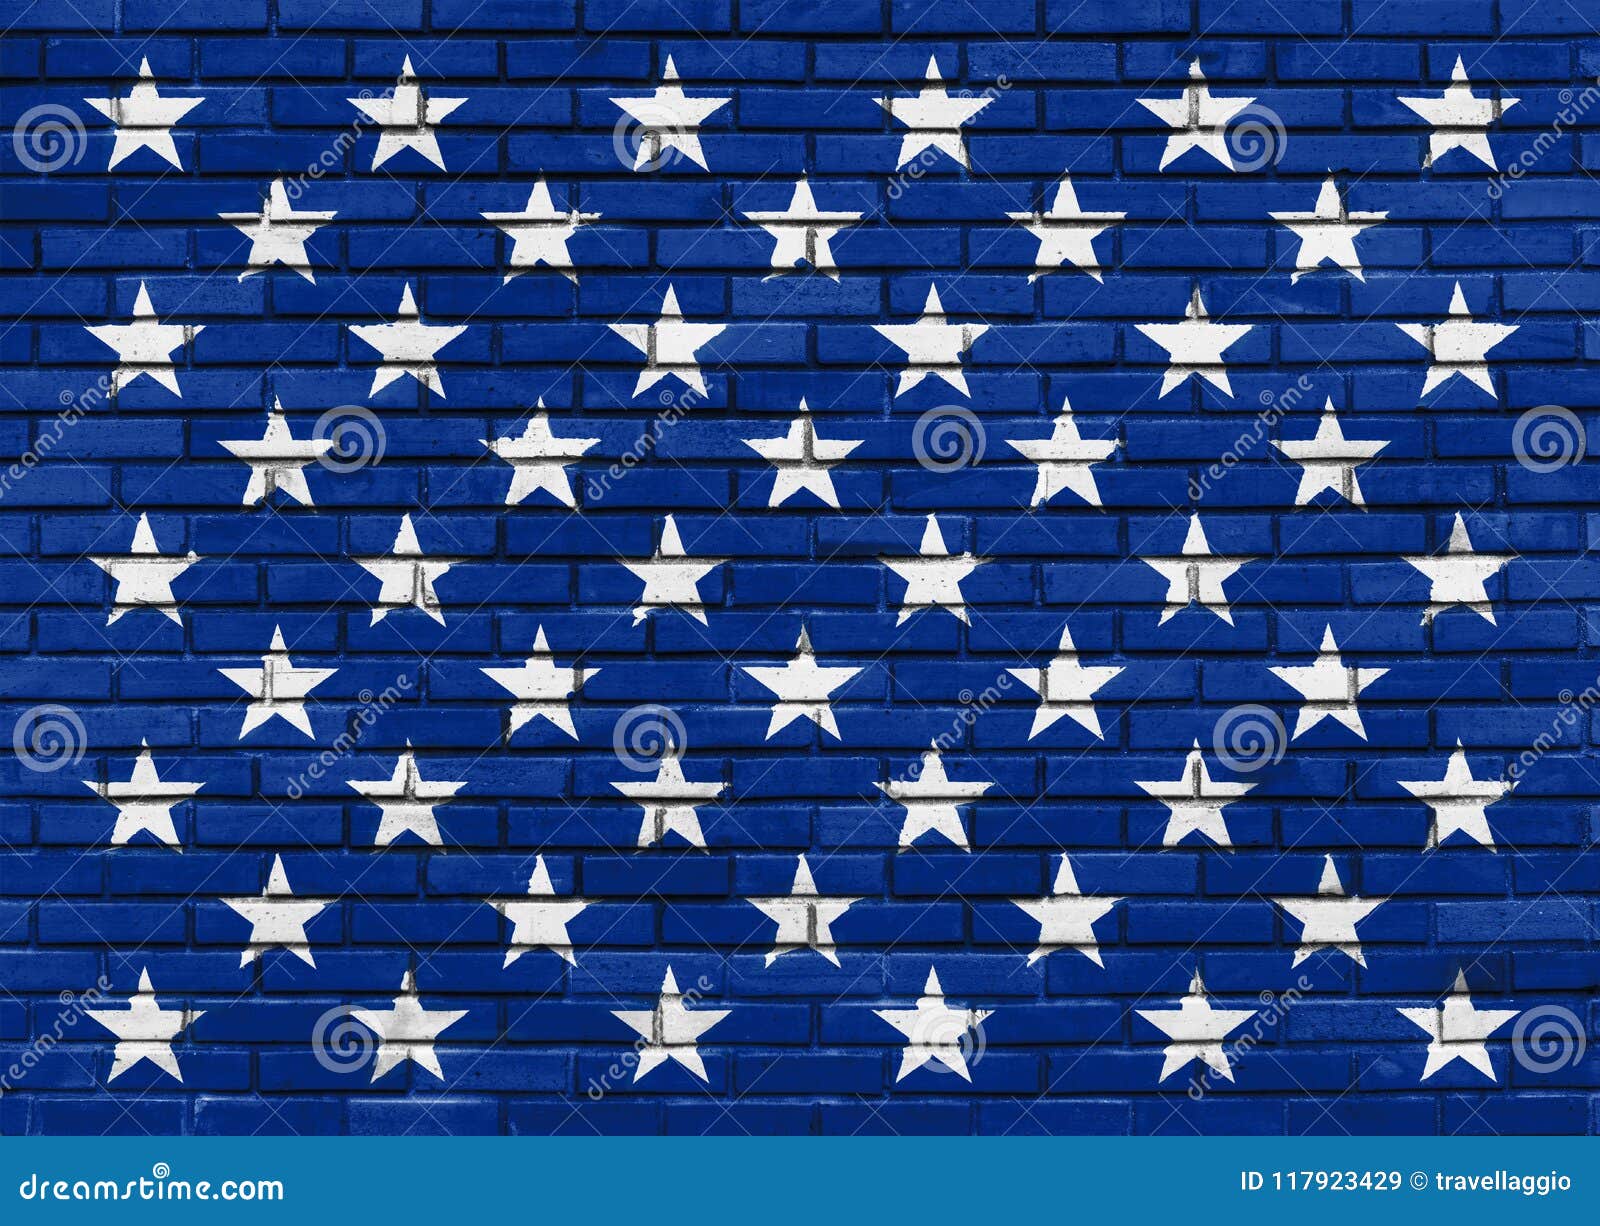 Funfzig Weisse Sterne Auf Der Gemalten Blauen Backsteinmauer Thema Der Amerikanischen Flagge Stock Abbildung Illustration Von Funfzig Flagge